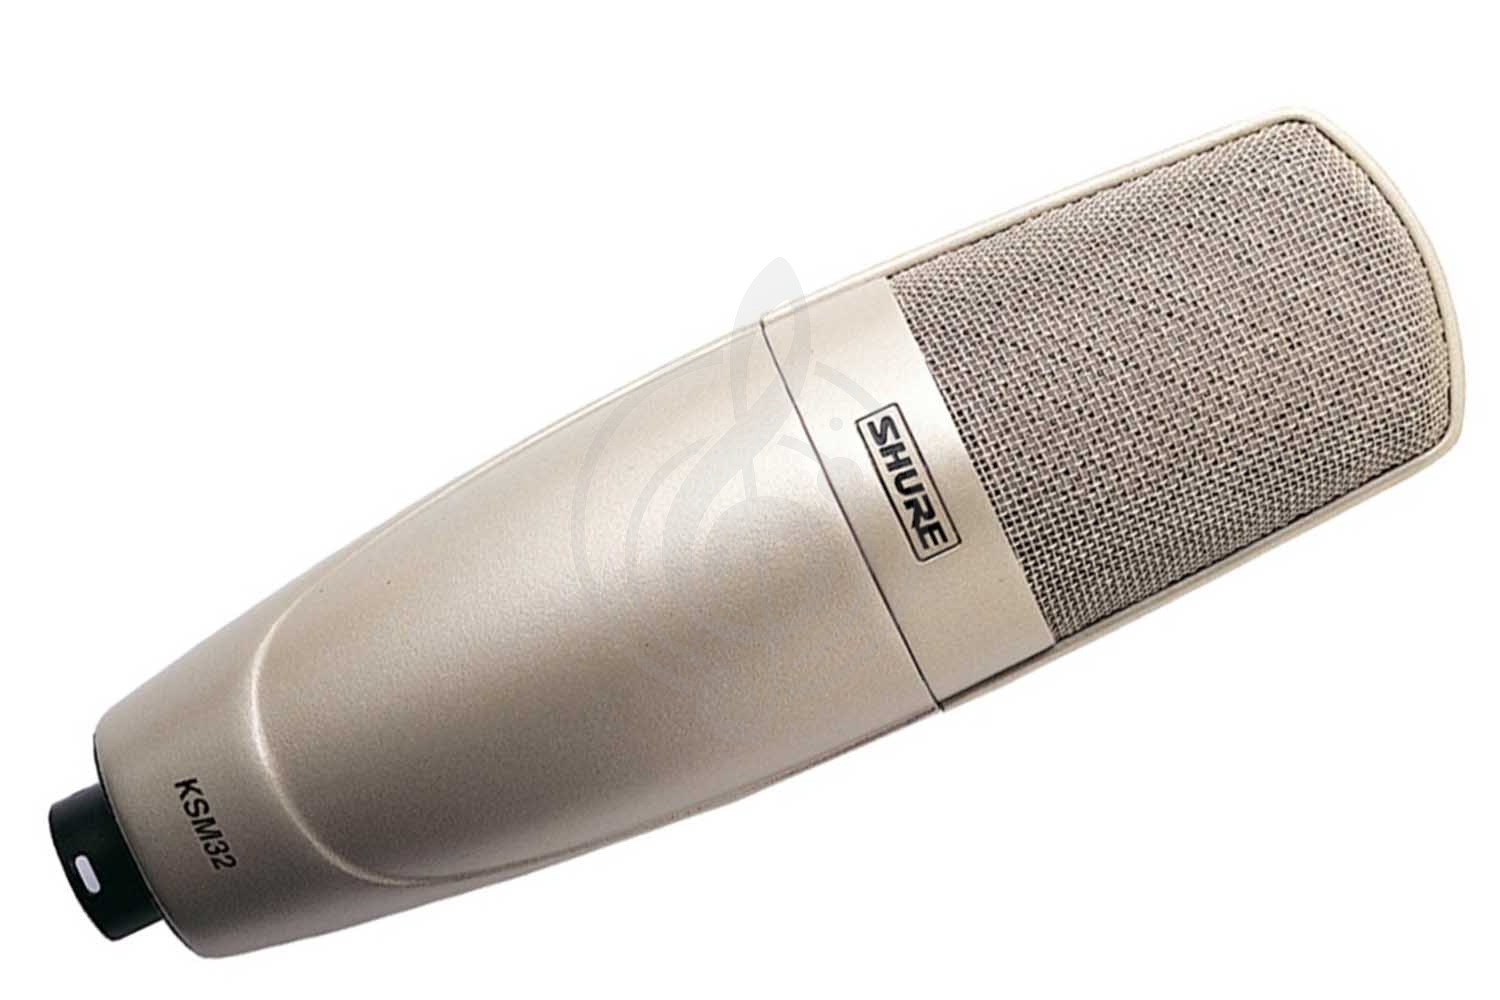 Конденсаторный студийный микрофон Конденсаторные студийные микрофоны Shure SHURE KSM32/SL - конденсаторный студийный микрофон KSM32/SL - фото 1